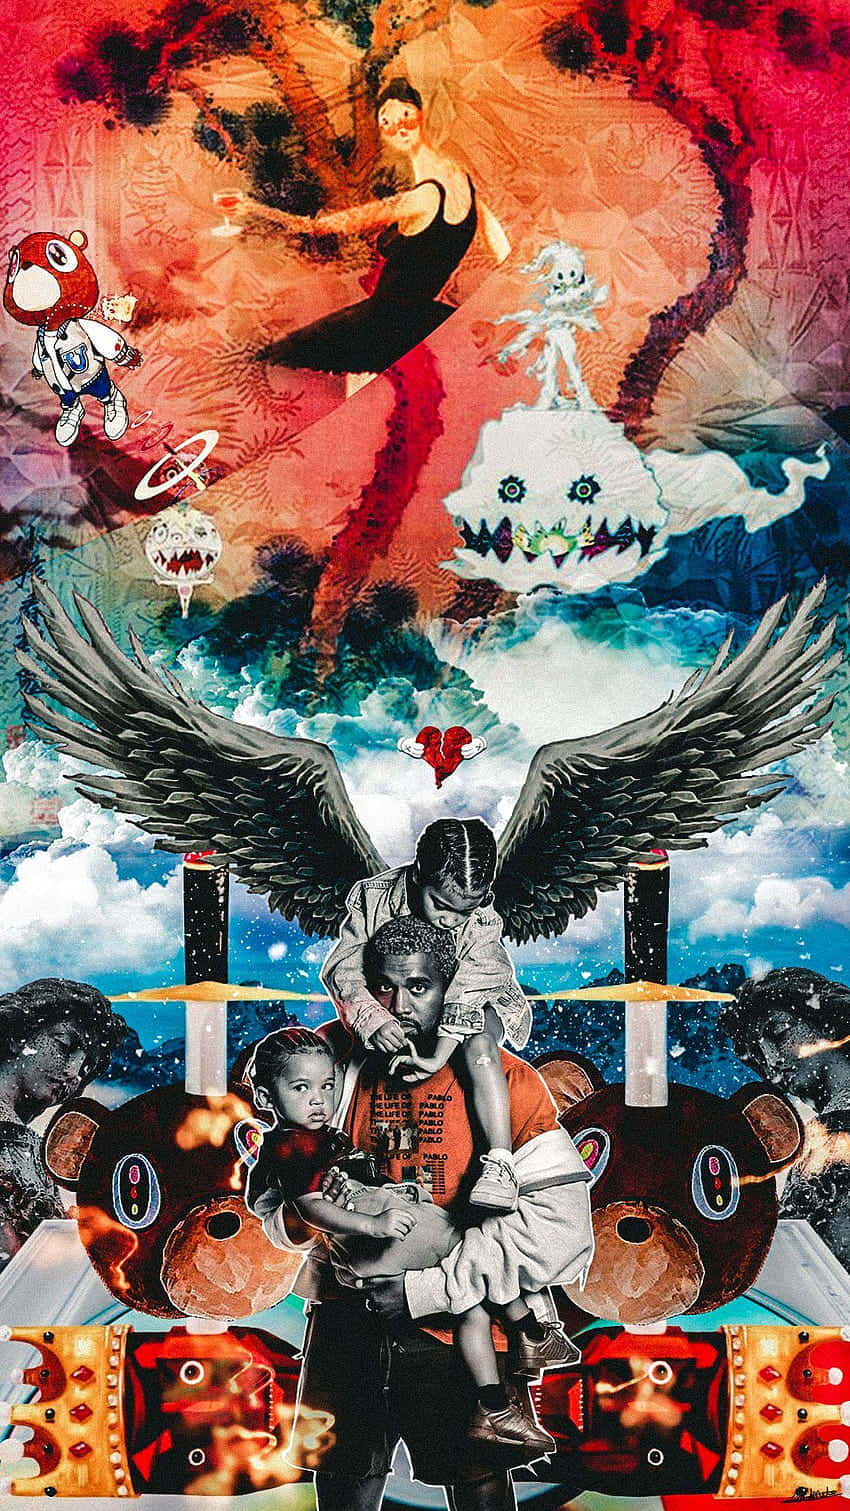 Kanyewest Präsentiert Seine Neueste Innovation, Das Kanye West Iphone. Wallpaper